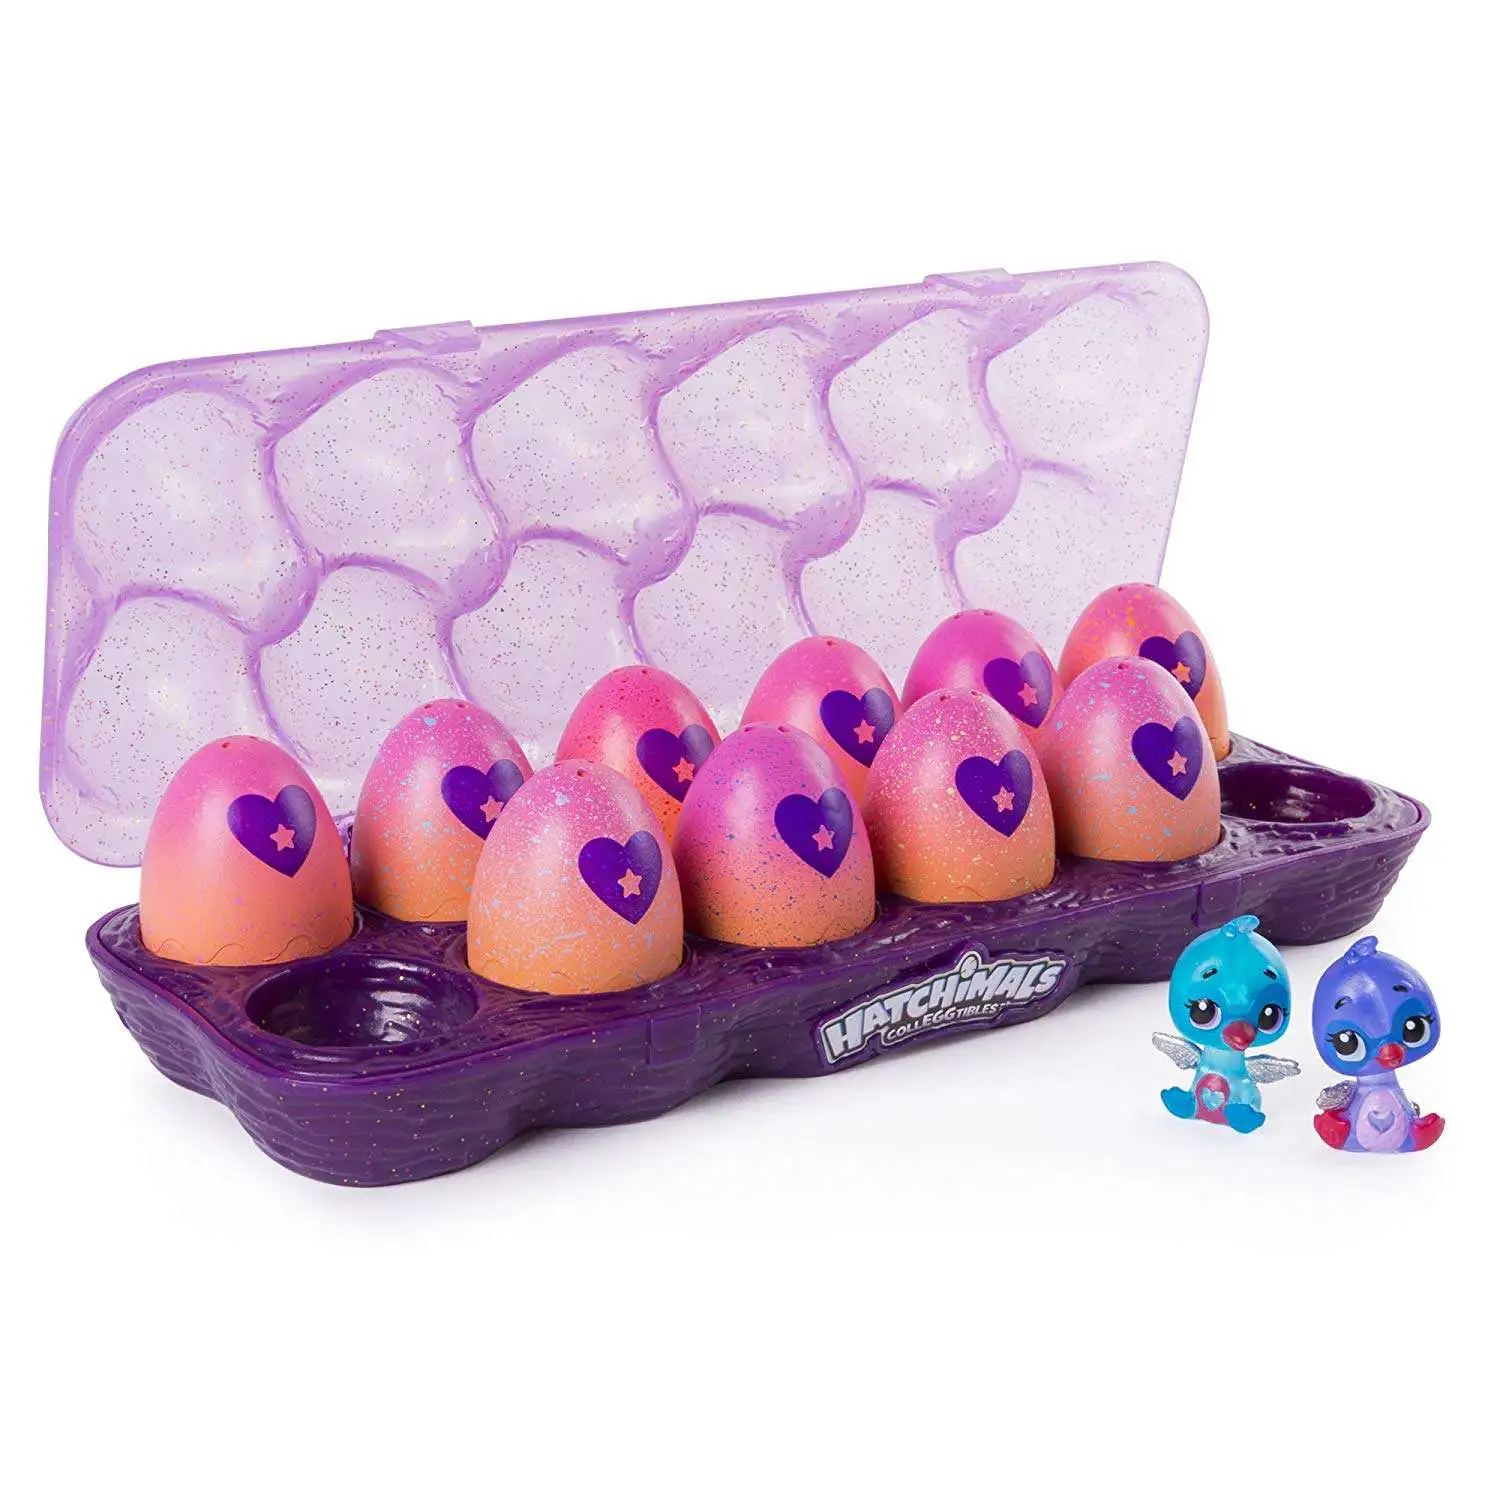 Hatchimal Egg Carton 2 Pack Season 4 FREE SHIPPING 